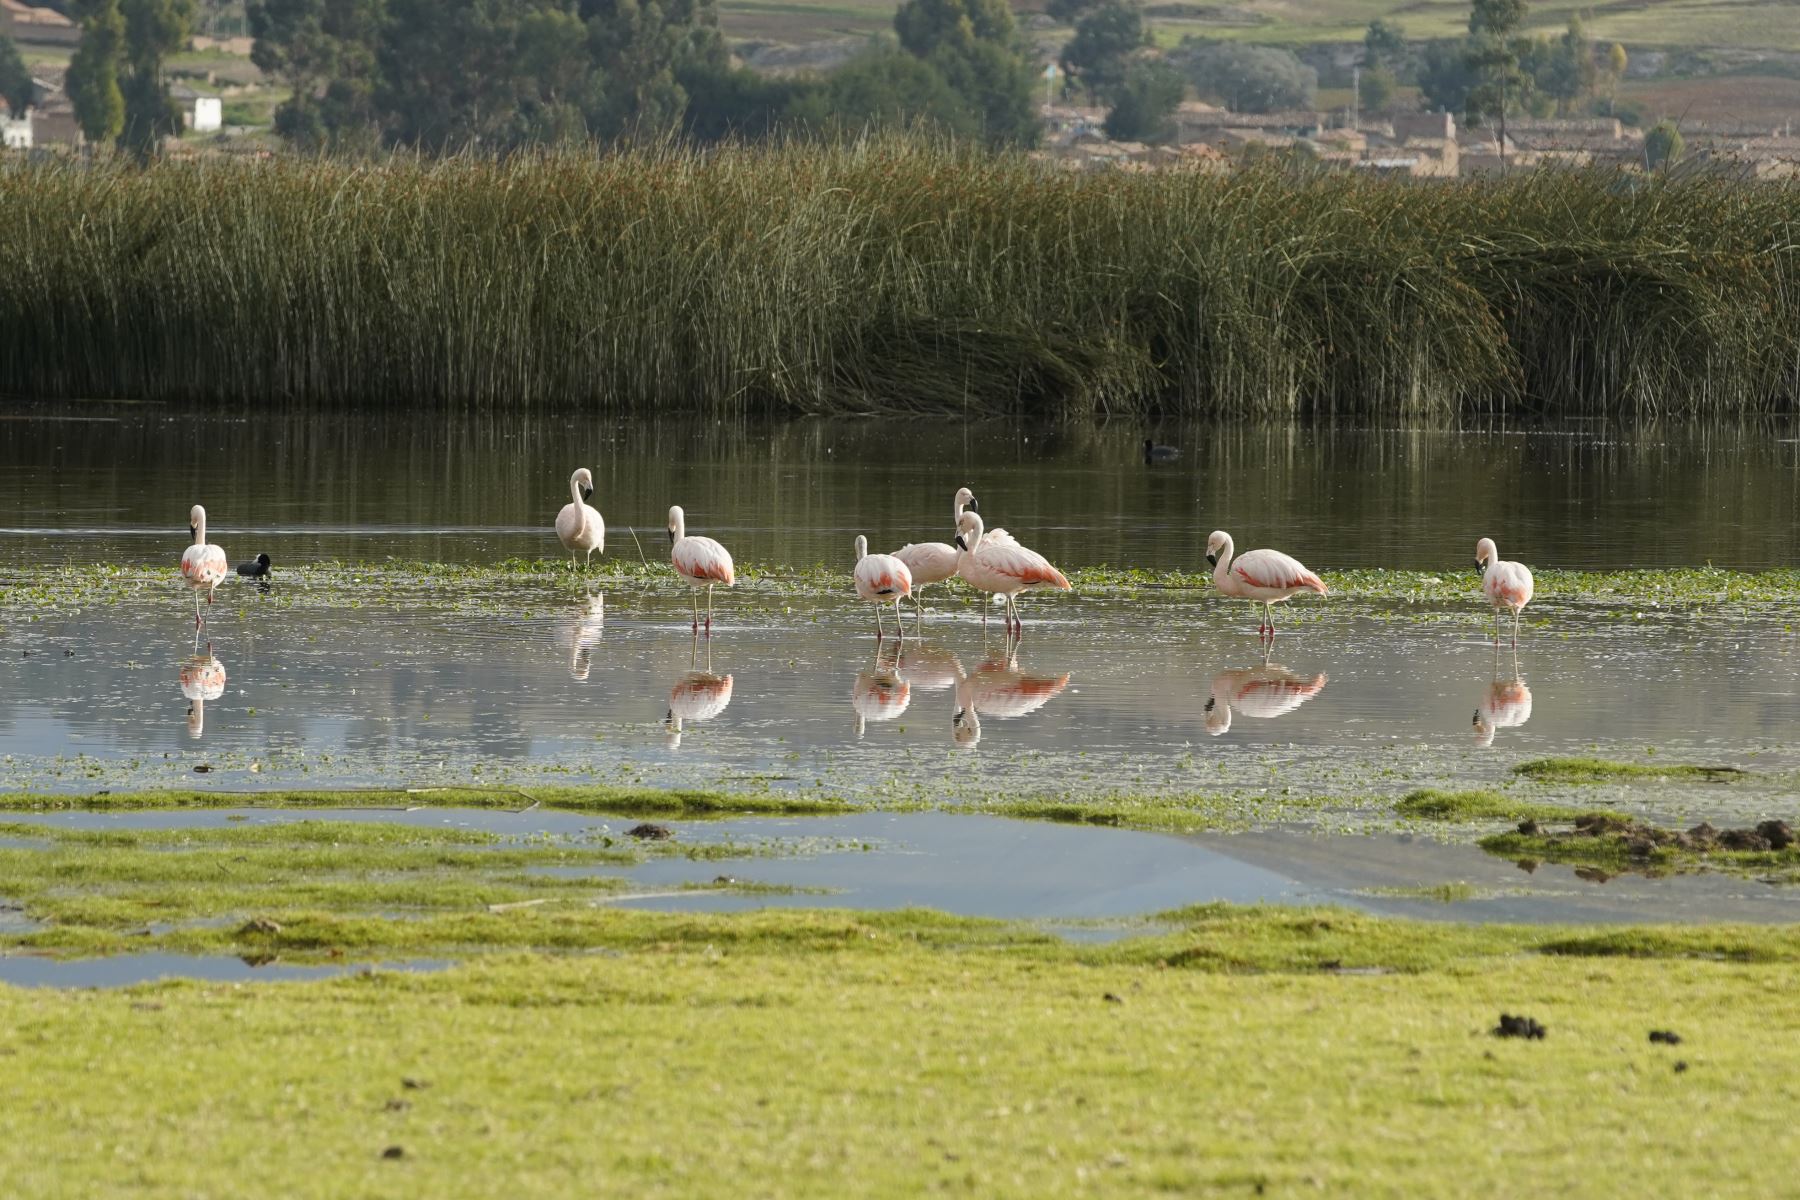 el Perú cuenta actualmente con 13 humedales de importancia internacional o sitios Ramsar que, en conjunto, tienen una superficie de 6 millones 784,041 hectáreas. Constituyen ecosistemas de gran biodiversidad y son fuente de recursos hídricos. ANDINA/Difusión